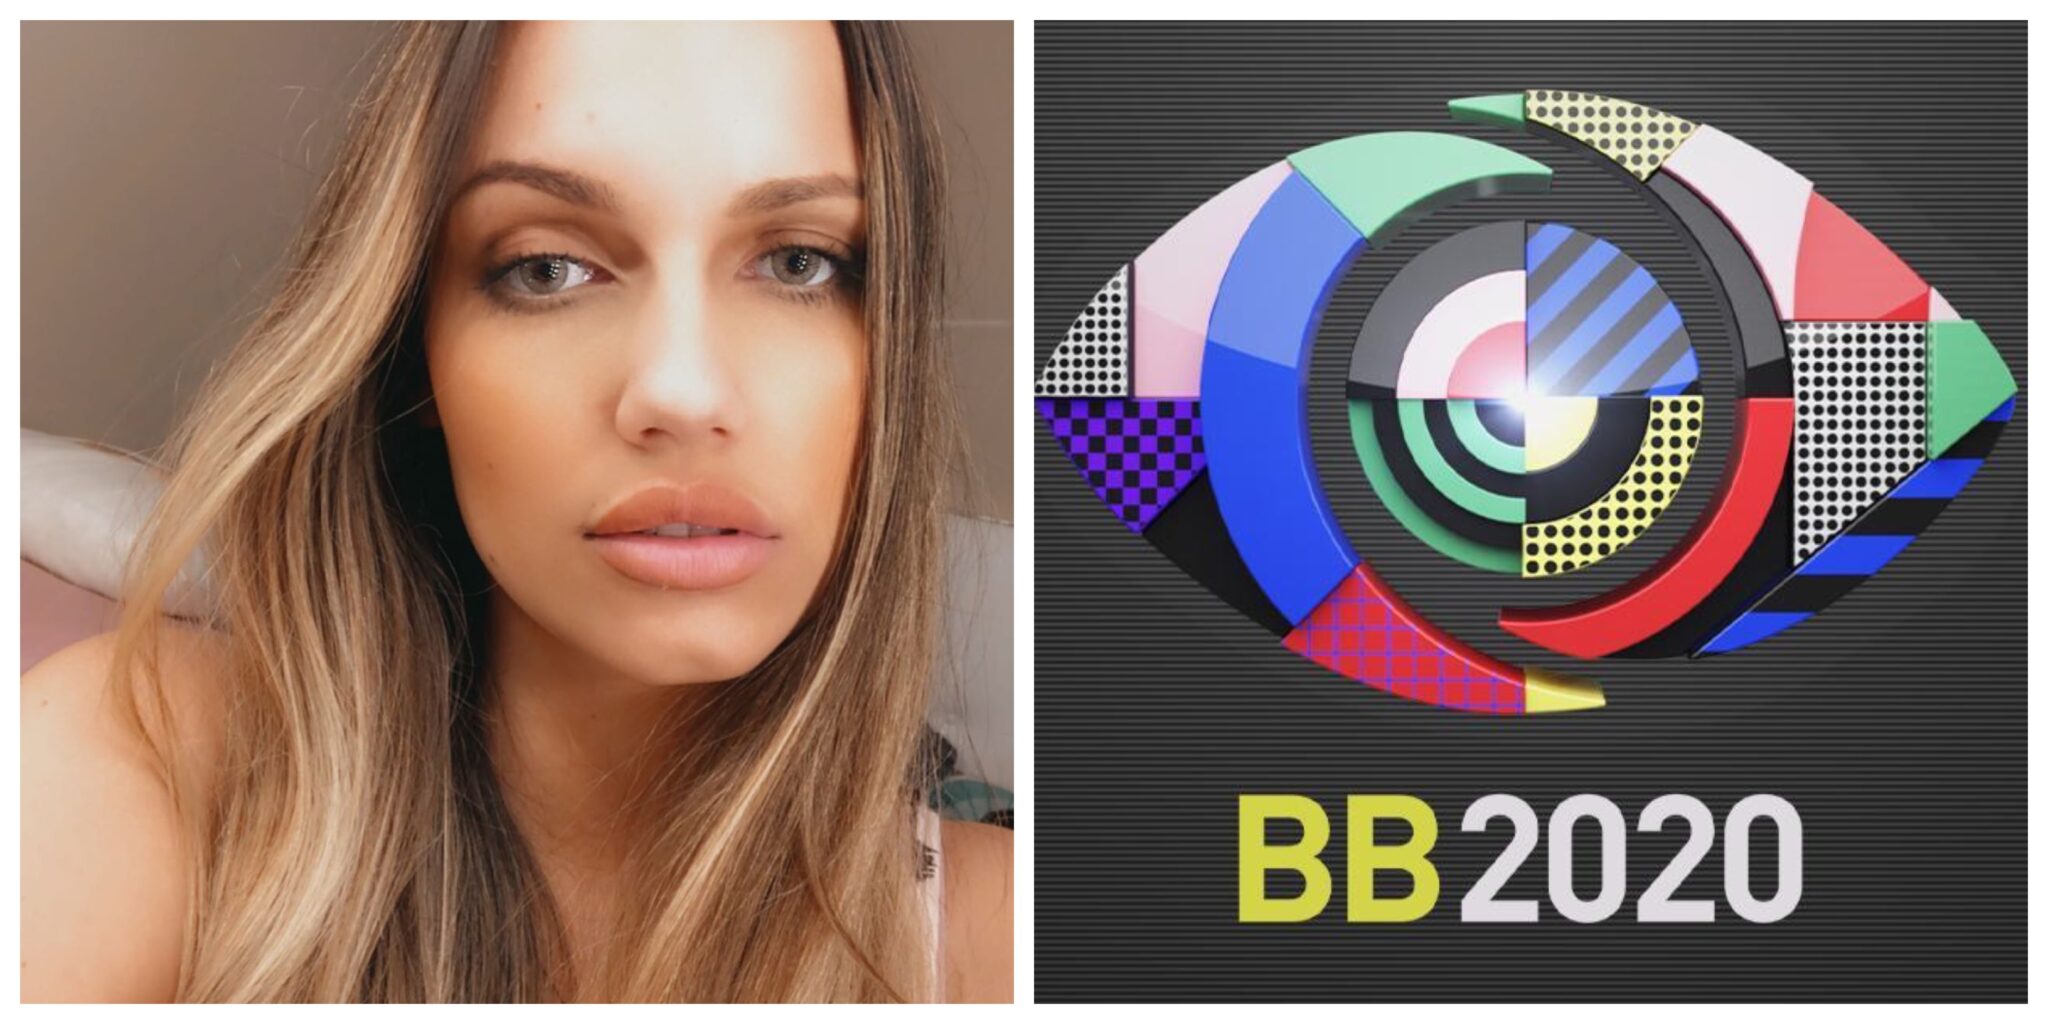 Debora Picoito 2 Scaled Big Brother 2020. Débora Picoito Ataca Críticos De Reality Shows